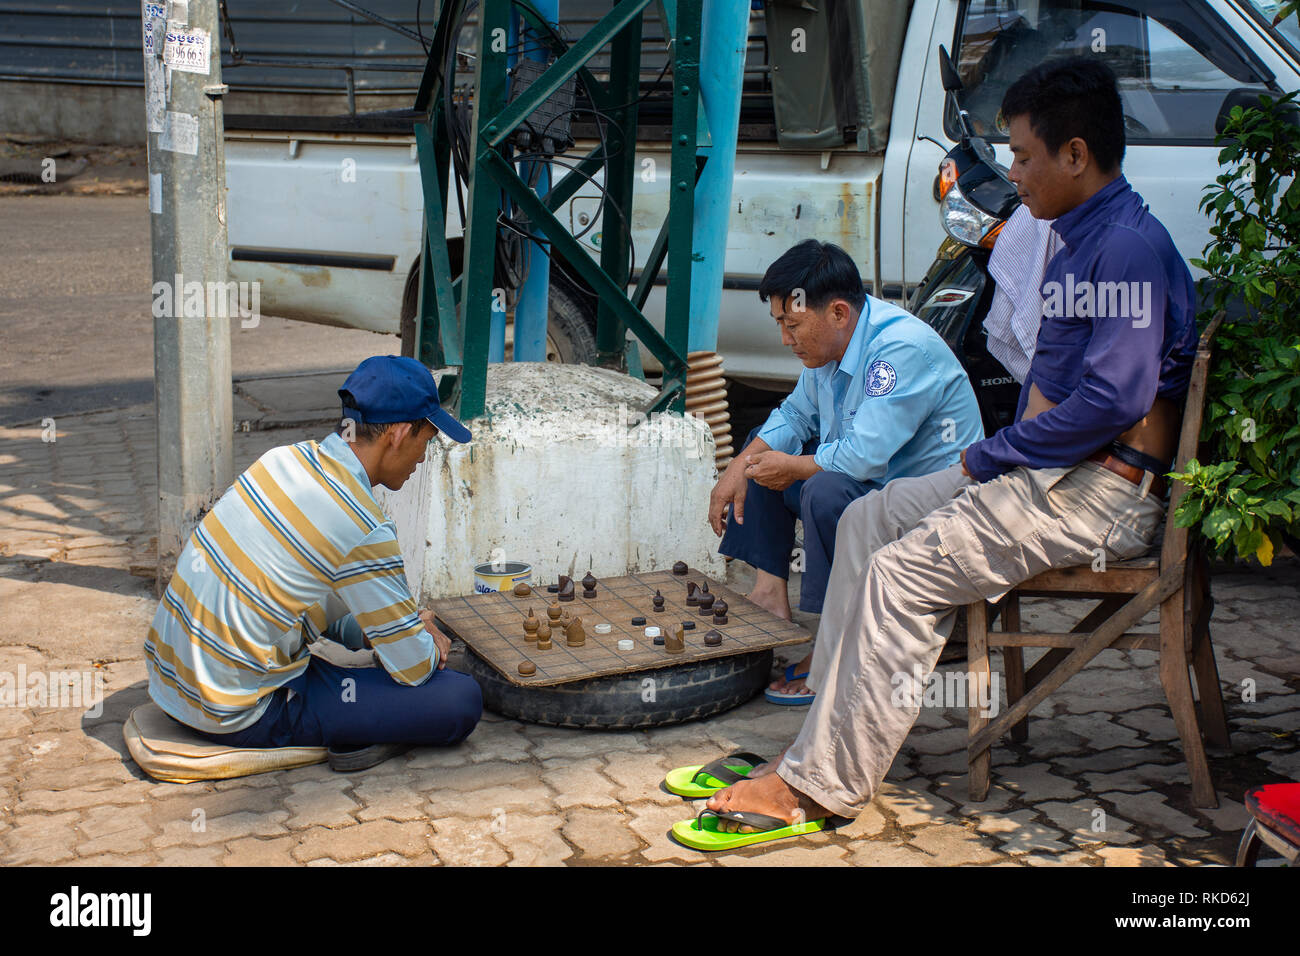 Eine Gruppe von asiatischen Männer spielen eine Machen brettspiel schach auf der Straße, Kambodscha. Stockfoto